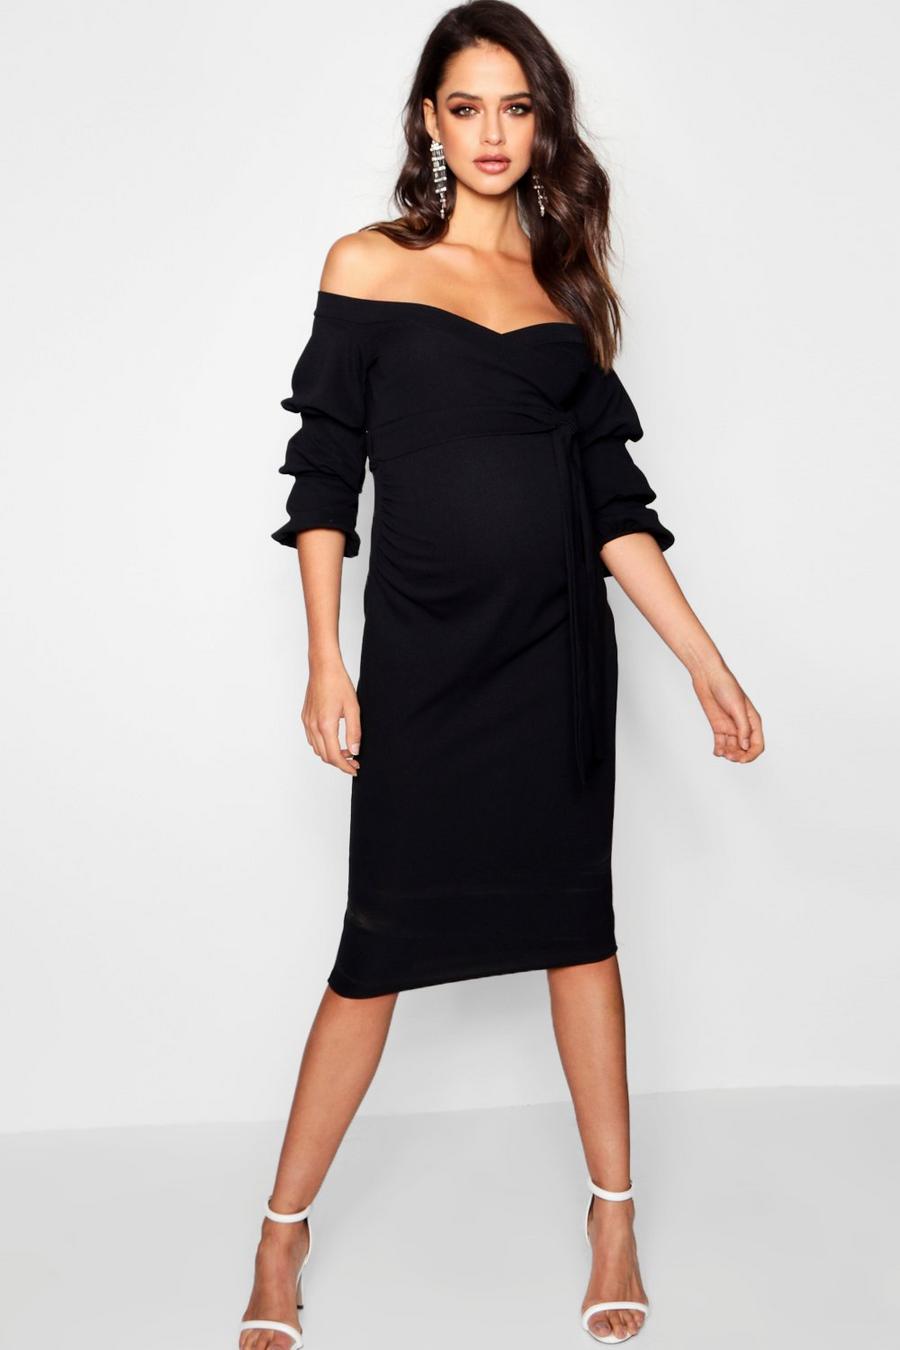 שחור nero שמלת מידי חשופת כתפיים עם שרוולים מעוטרים בגדי היריון image number 1